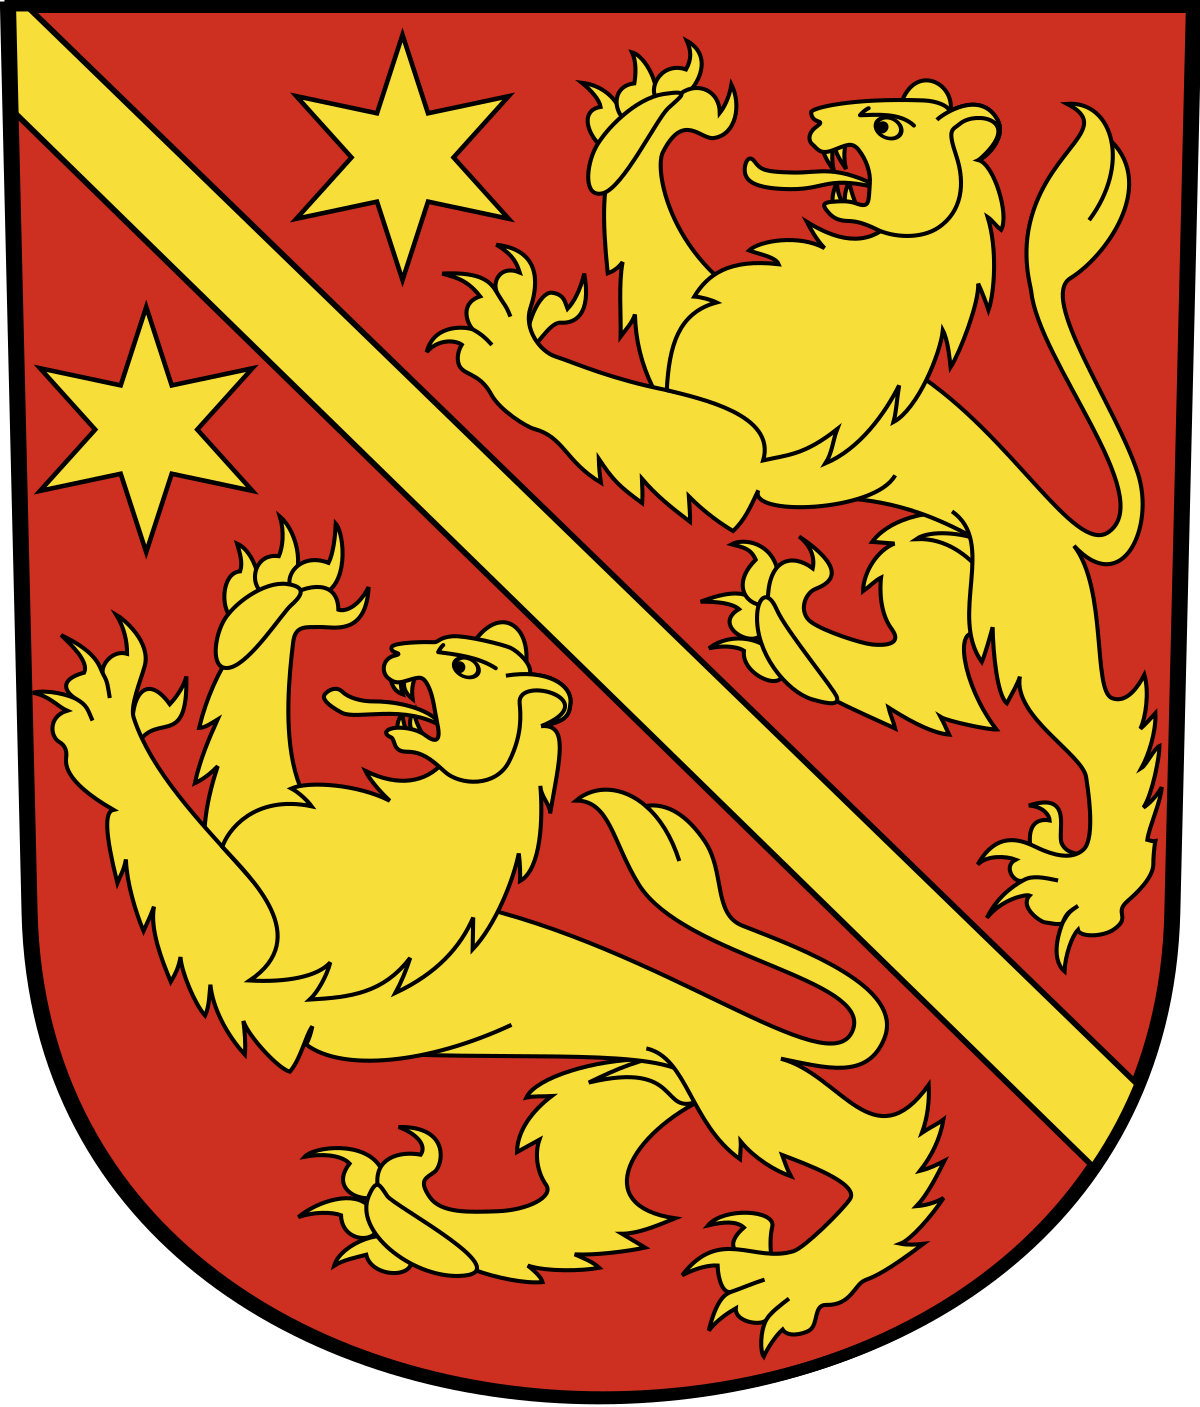 Gemeinde Kleinandelfingen